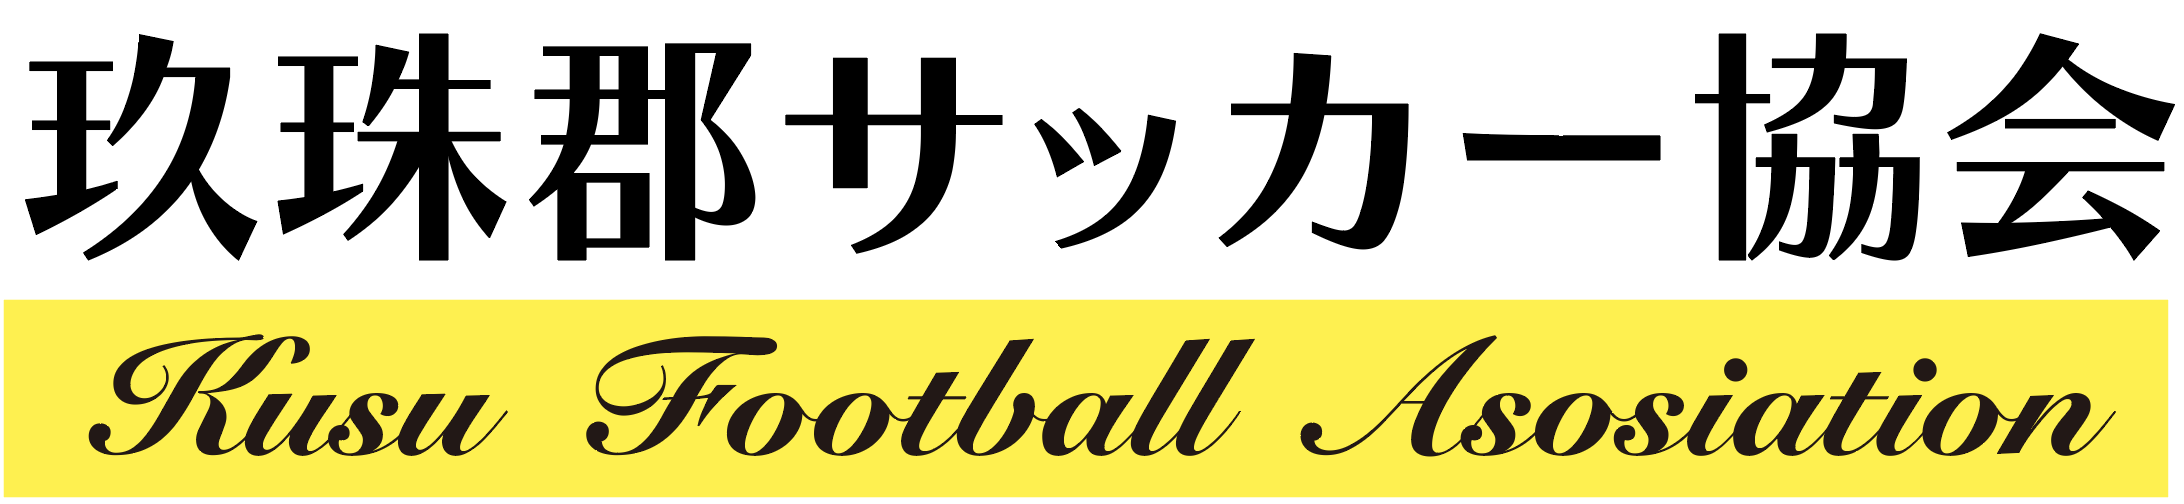 玖珠郡サッカー協会